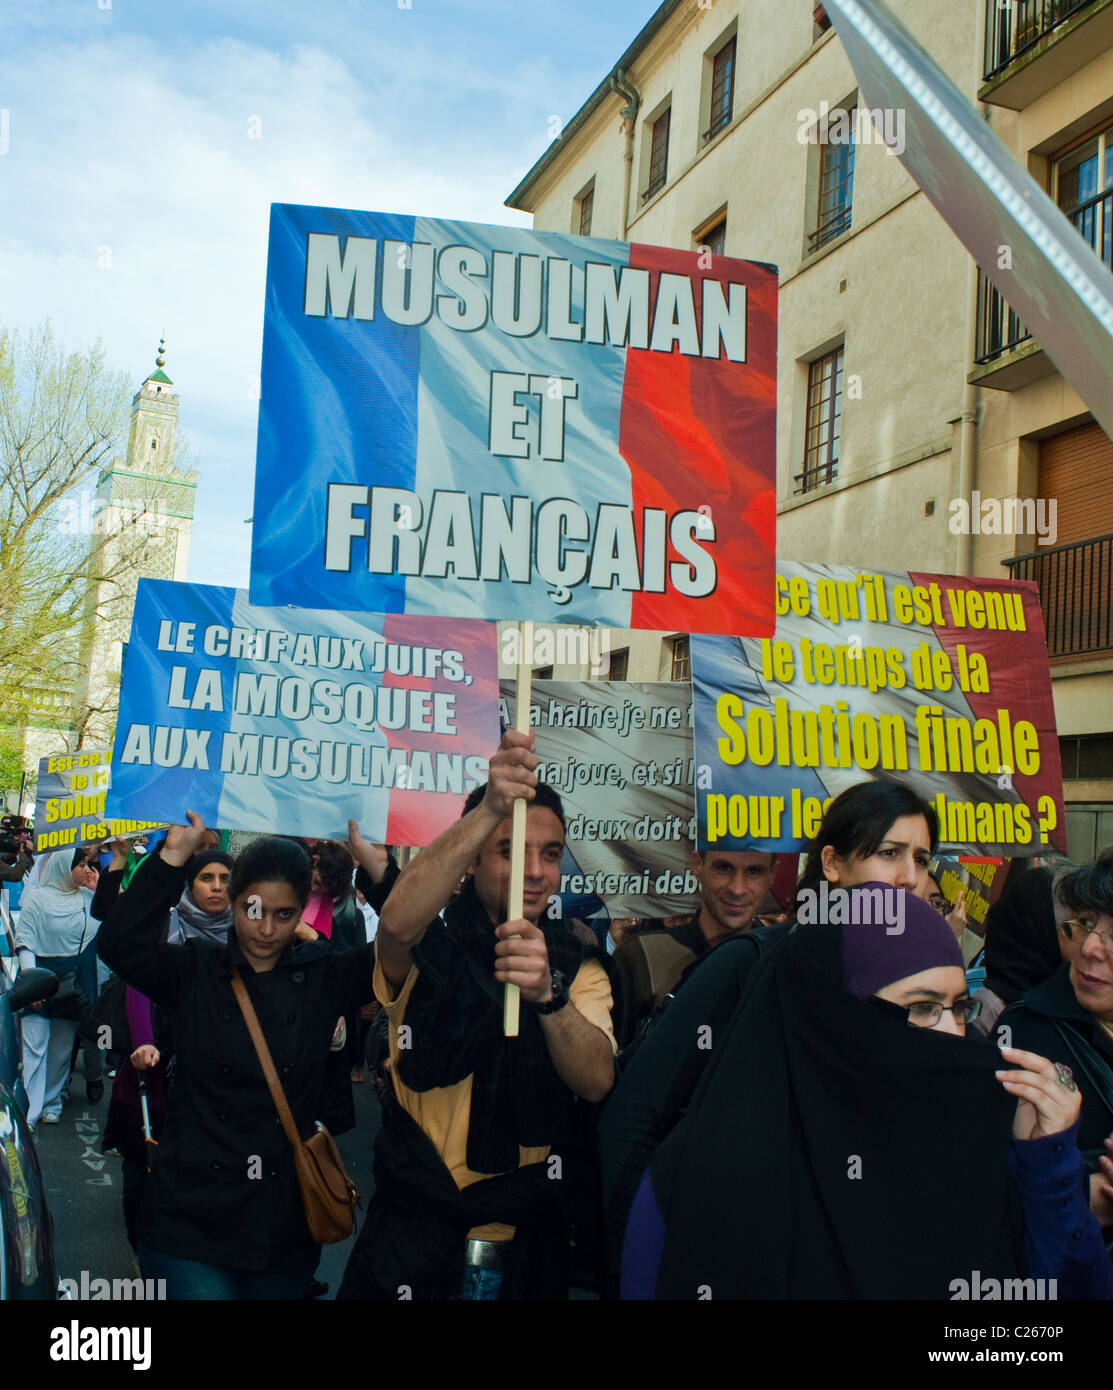 Paris, France, musulmans manifestant contre l'islamophobie, tenant des signes de protestation français "Muslims et Français" anti-discrimination, france musulmane Banque D'Images